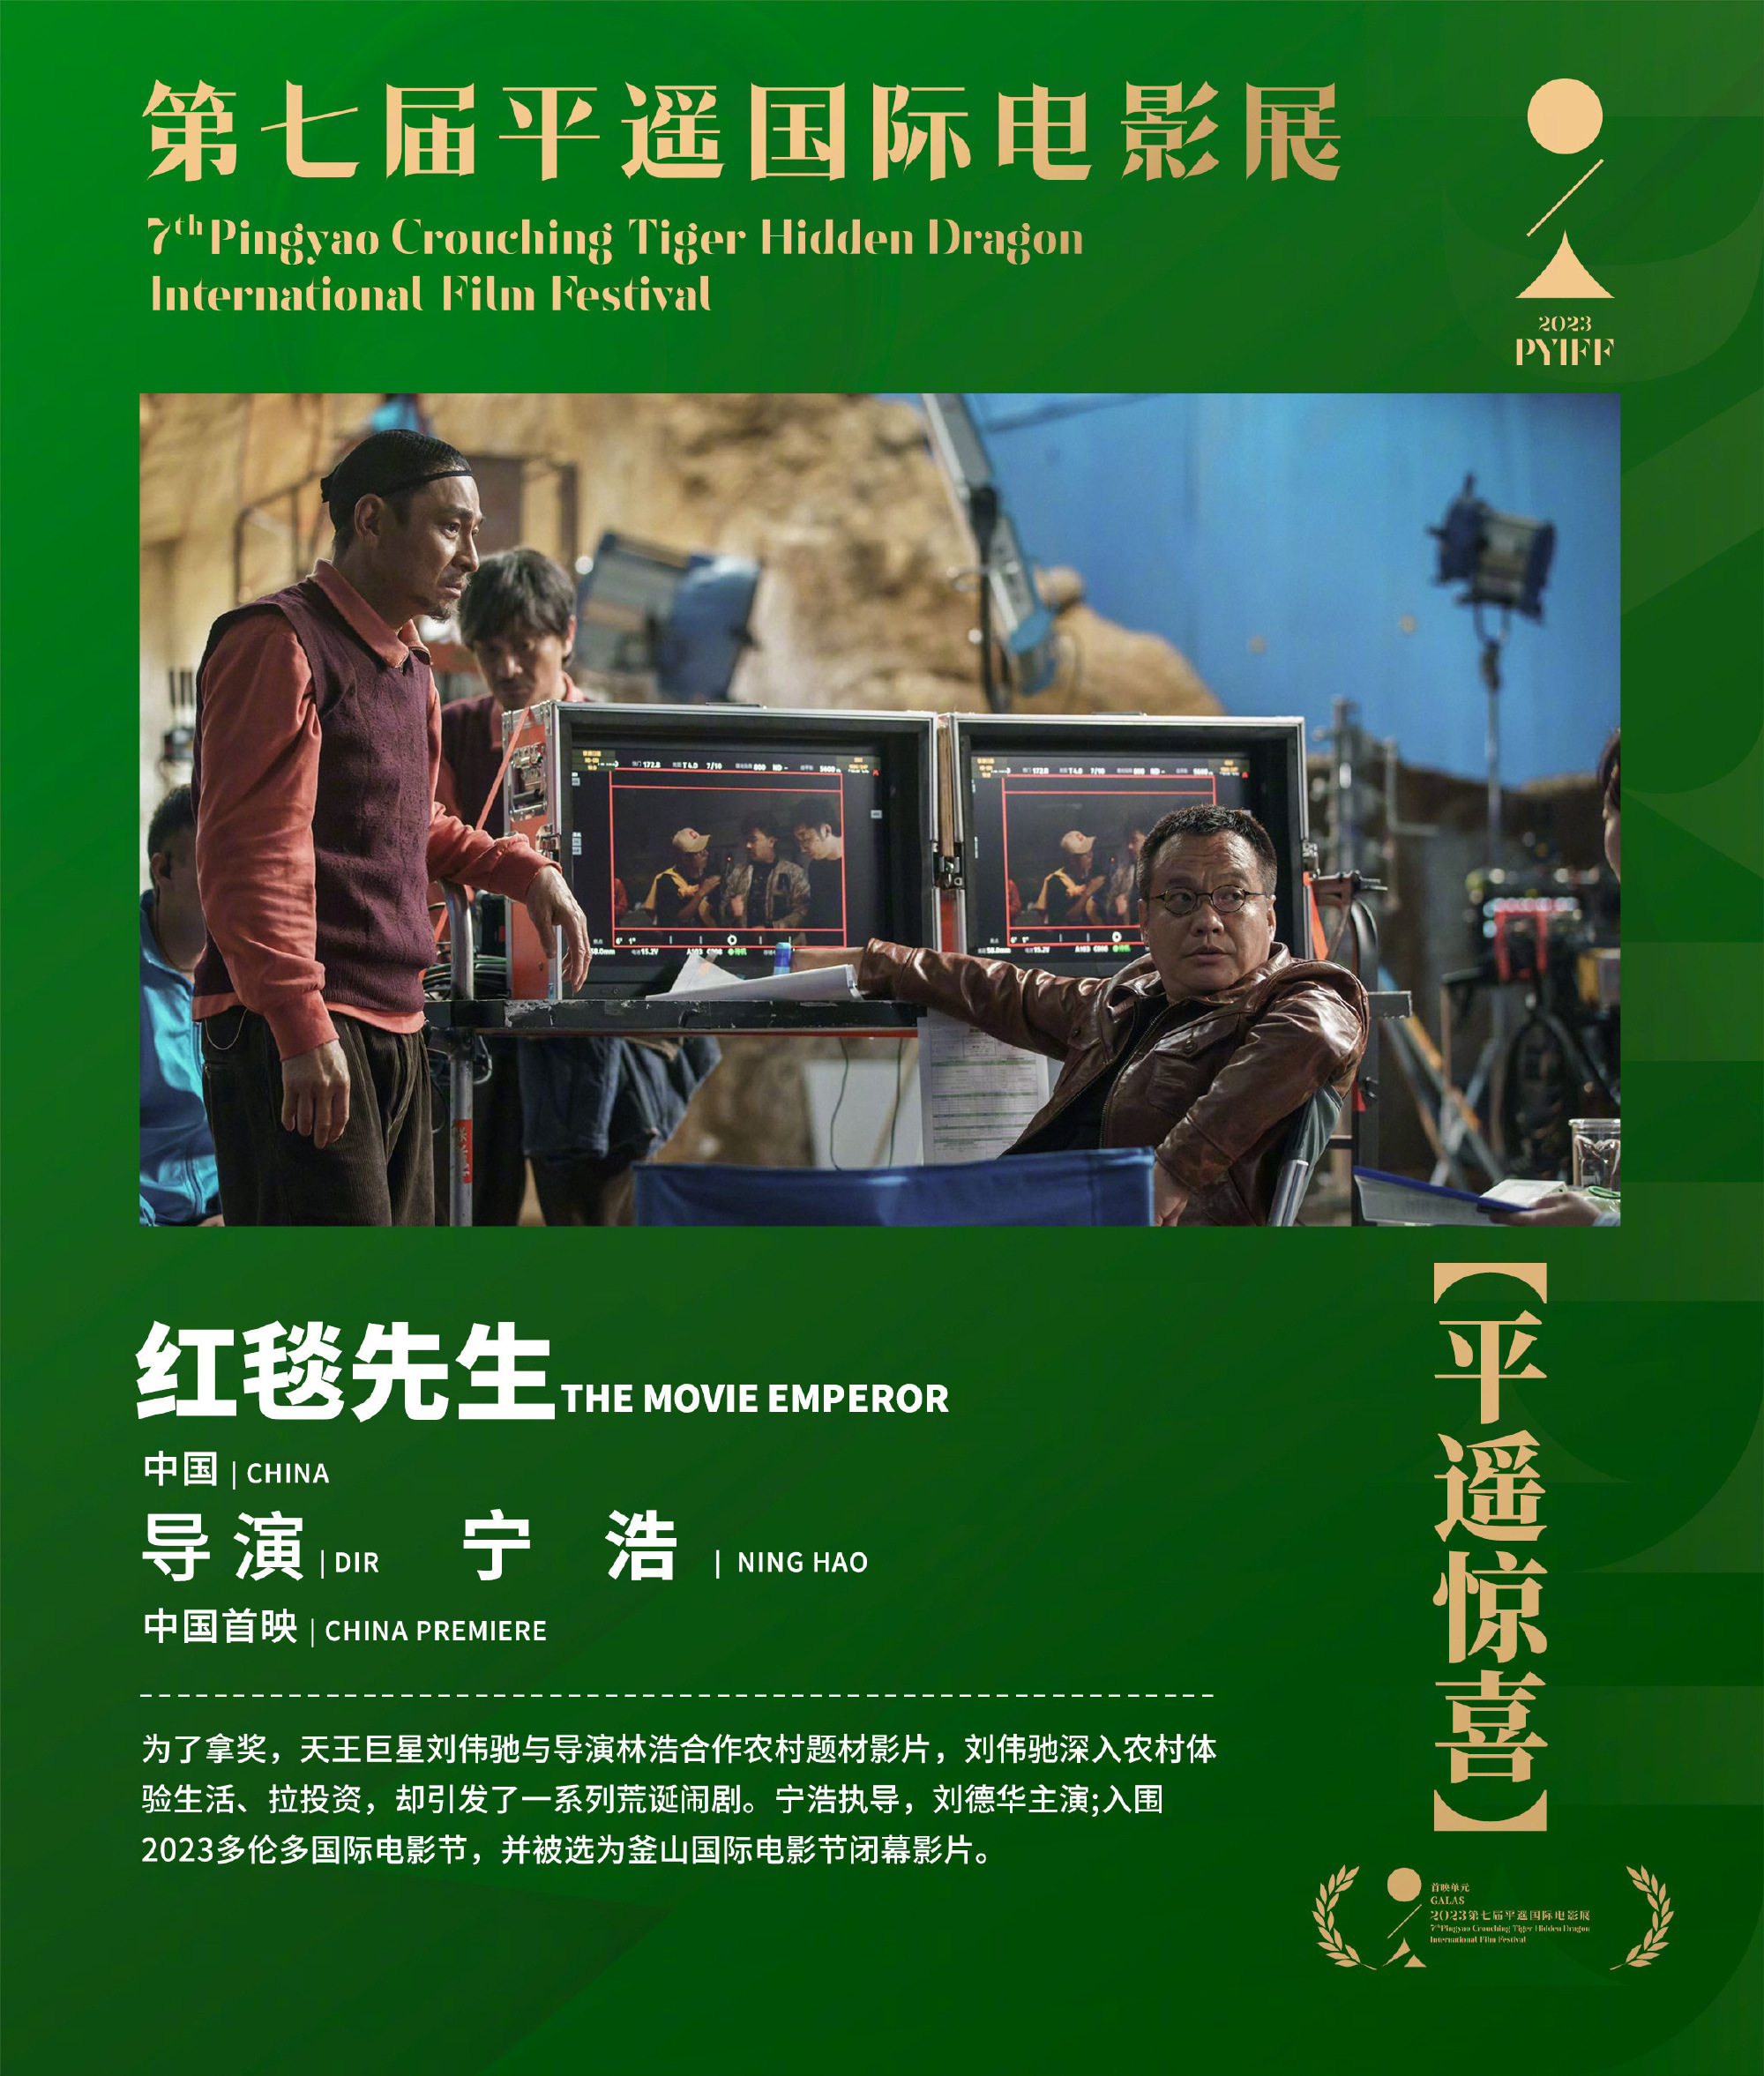 电影《红毯先生》将作为“平遥惊喜”影片亮相第七届平遥国际电影展